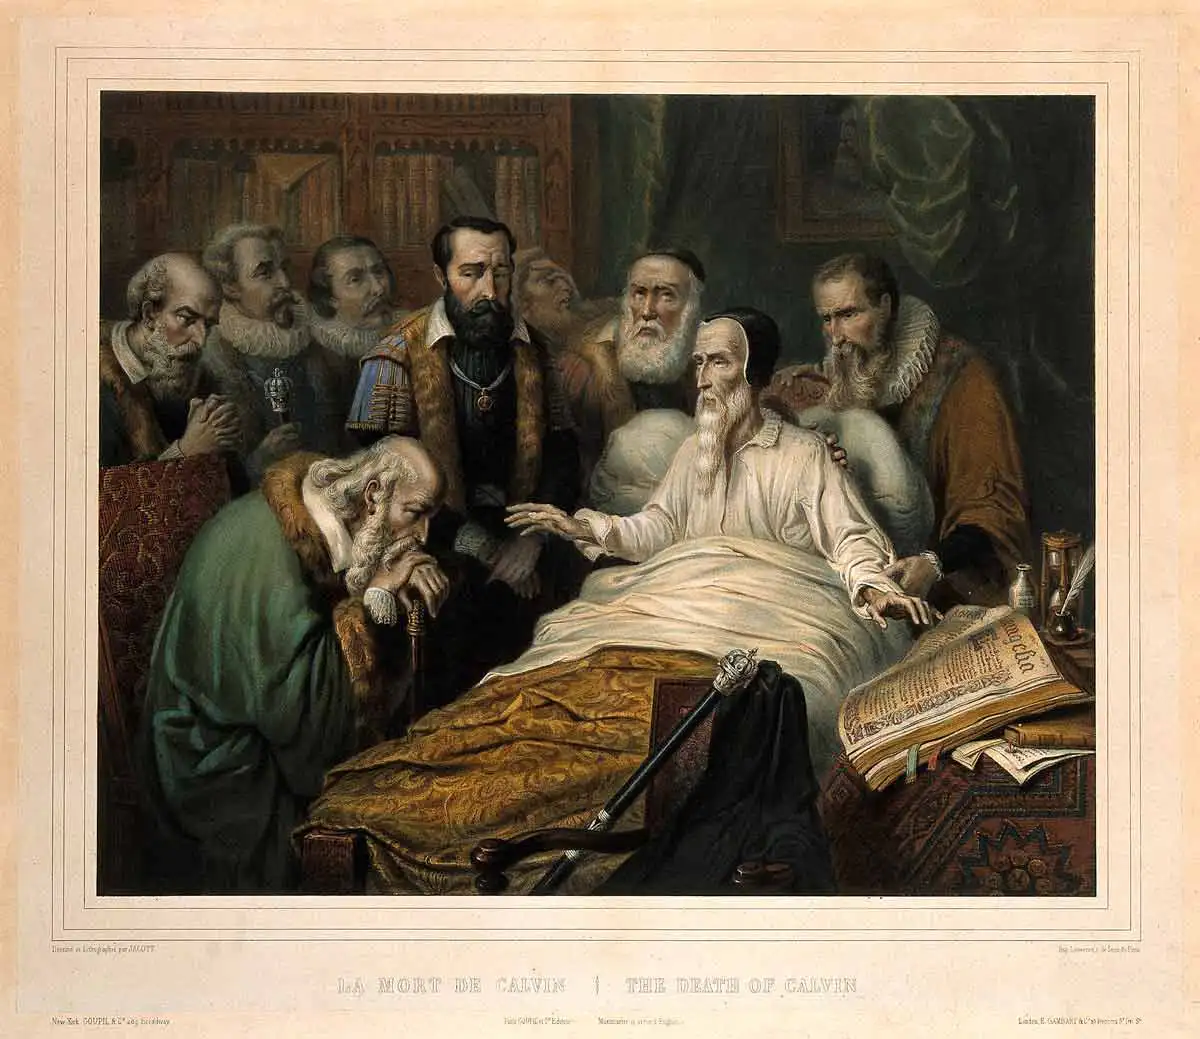 John Calvin Ölüm Döşeğinde, Jean-Julien Jacott, 1850, The Welcome Collection aracılığıyla